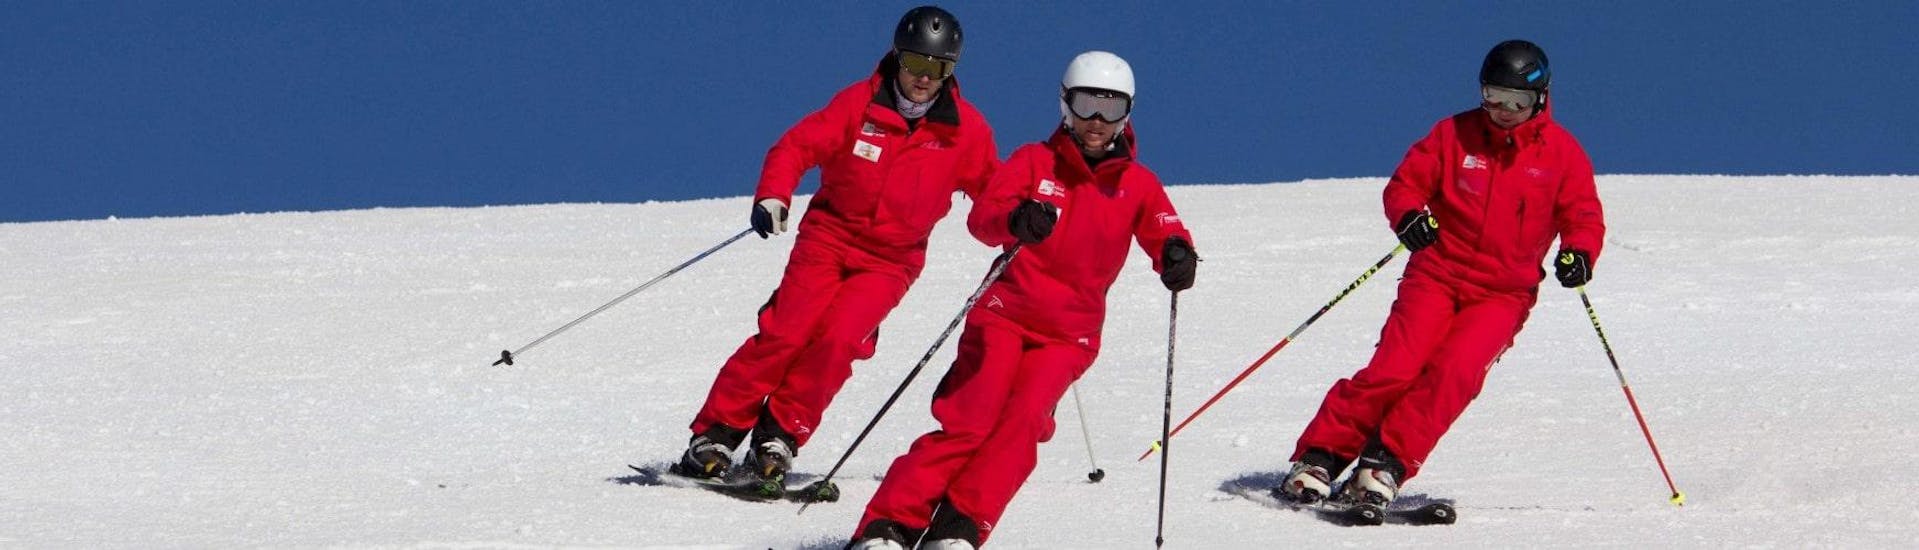 Clases de esquí privadas para adultos a partir de 16 años para todos los niveles.